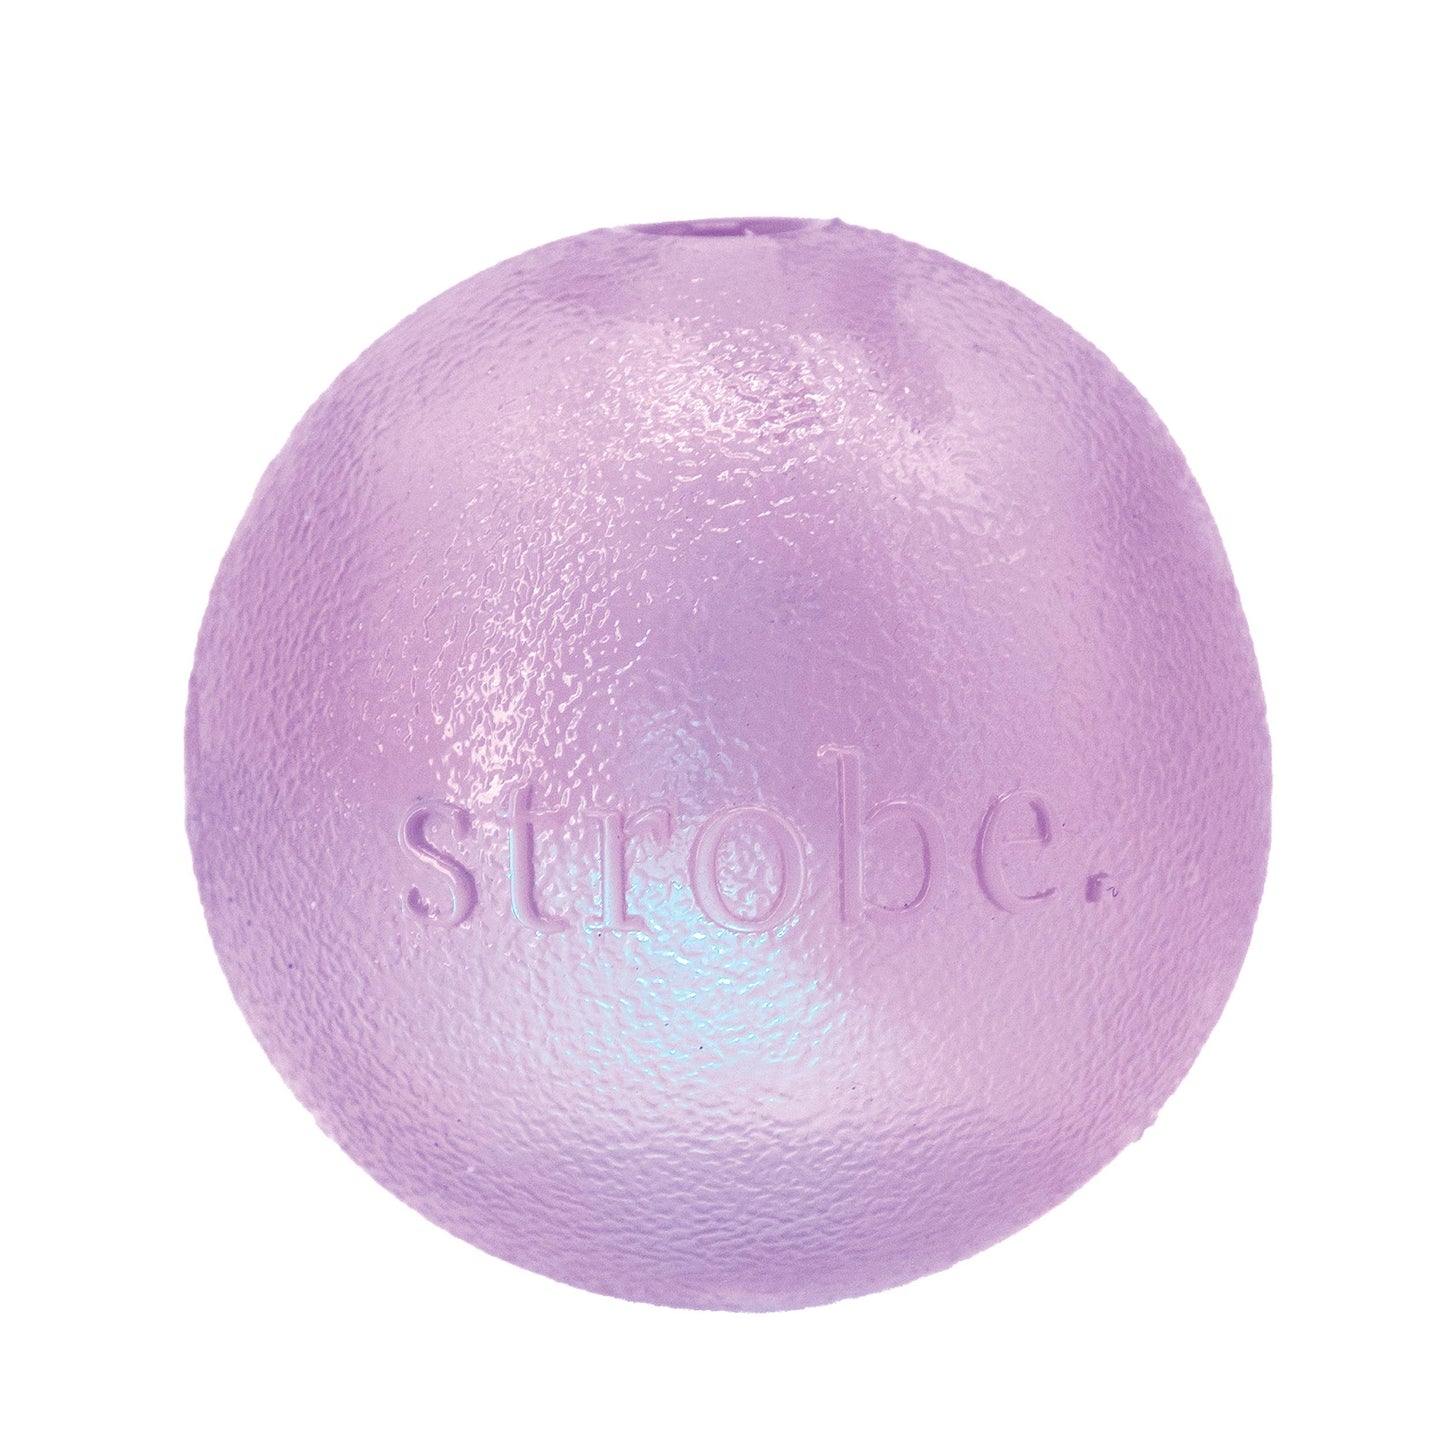 Orbee - Tuff LED Strobe Ball Toys Purple Image